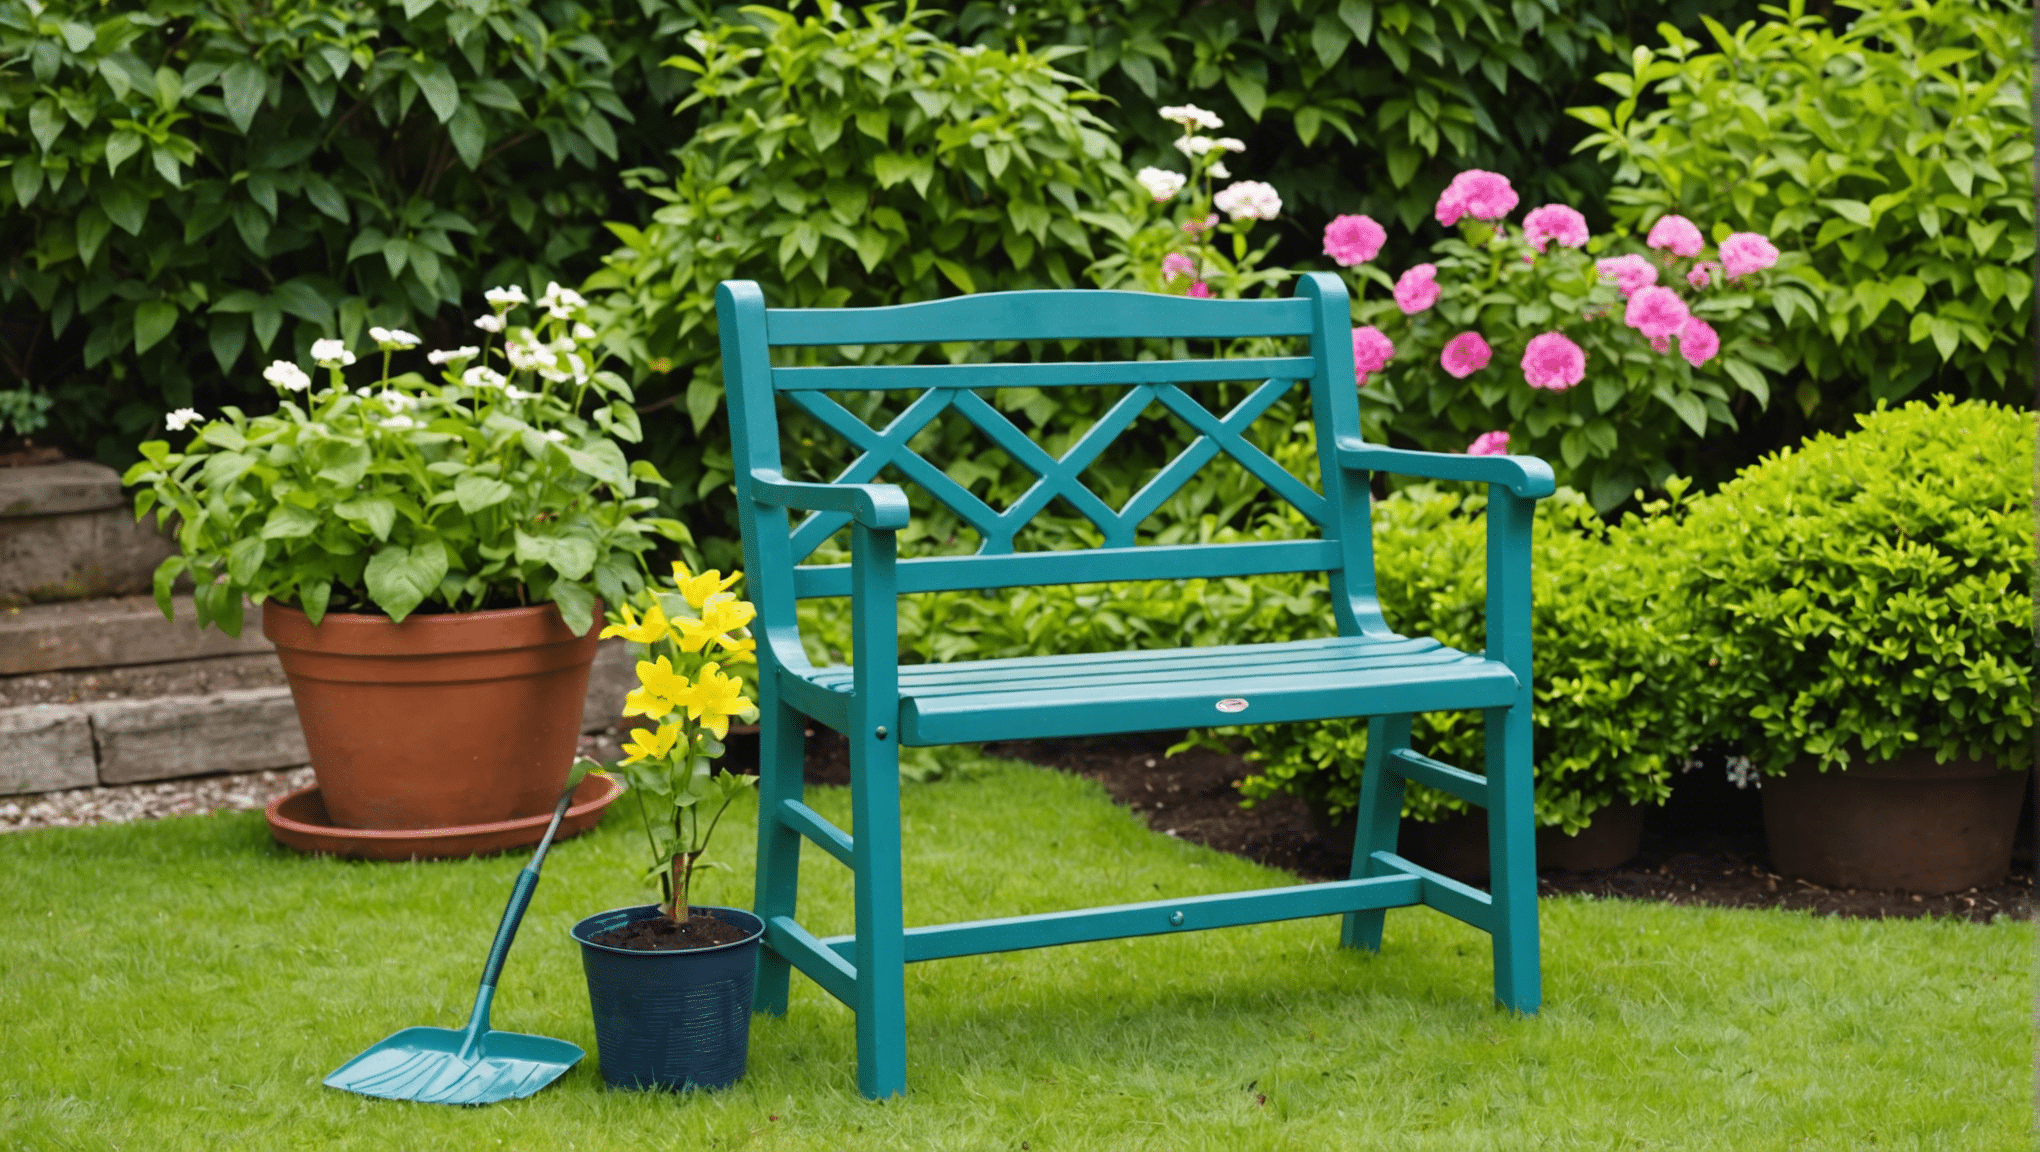 découvrez les avantages de l'utilisation d'un siège de jardinage et comment il peut améliorer votre expérience de jardinage. économisez votre dos et vos genoux tout en profitant de votre temps dans le jardin !